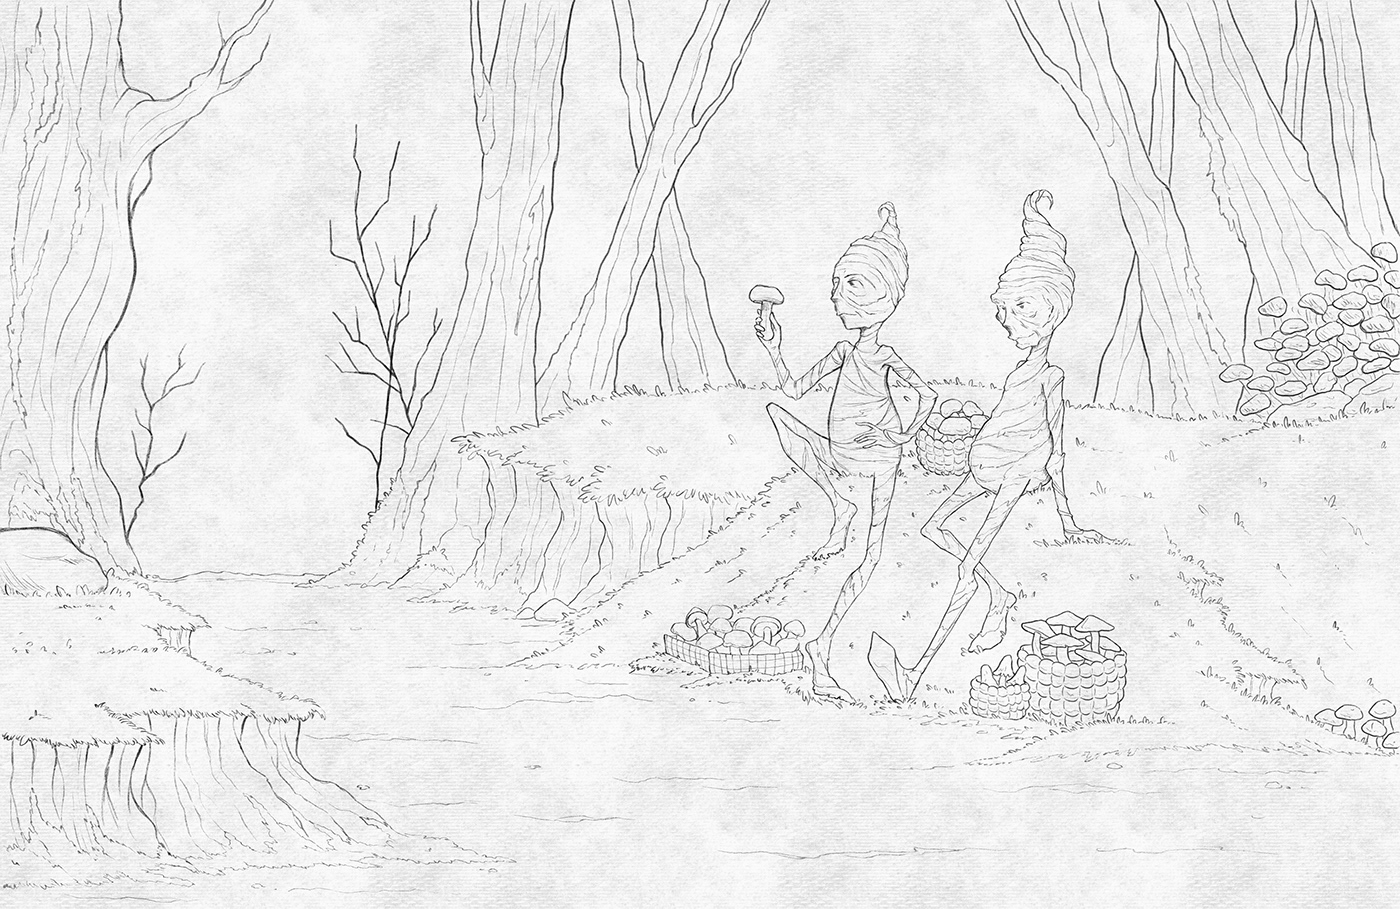 ILLUSTRATION  digital illustration digital watercolor forest forest illustration Character design  woodland woodland creatures watercolor forest creatures